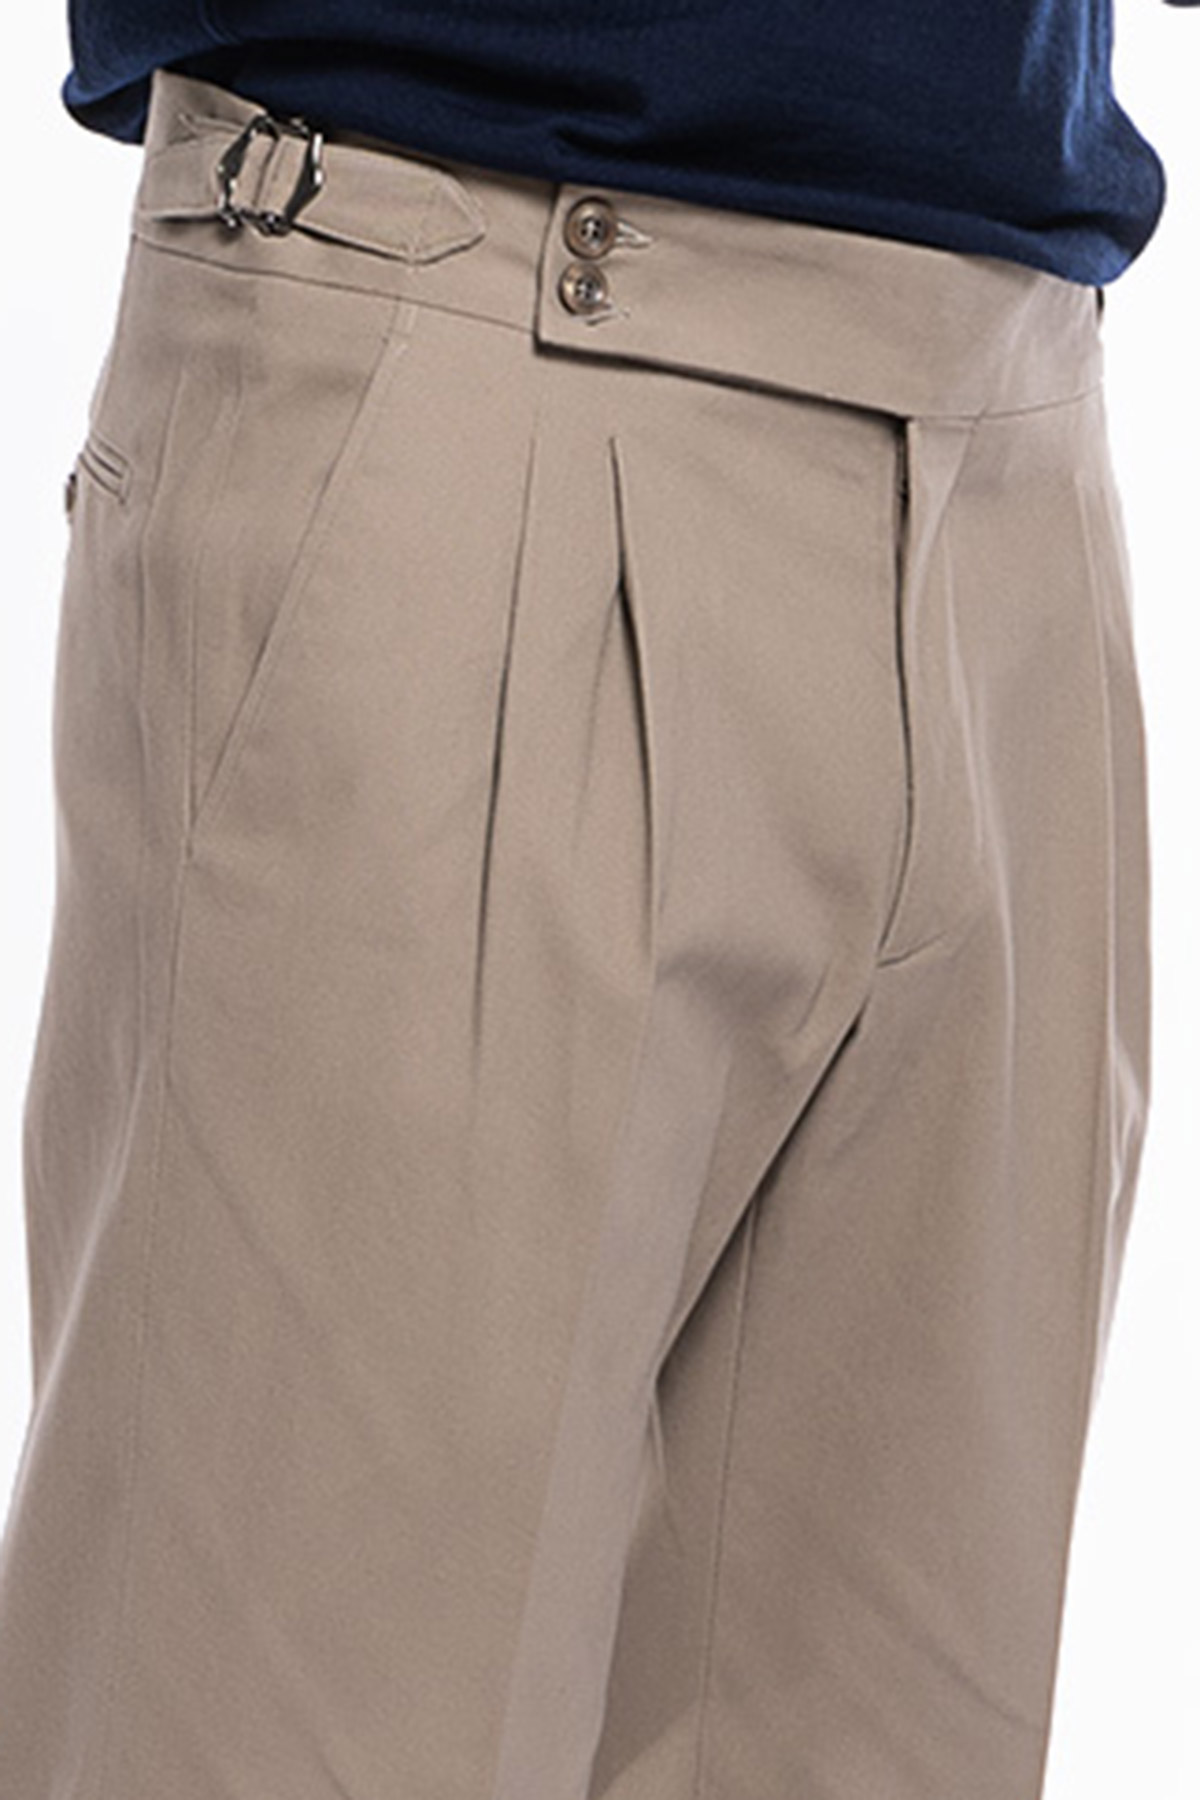 Pantalone uomo beige vita alta tasca america in cotone con doppia pinces e fibbie laterali